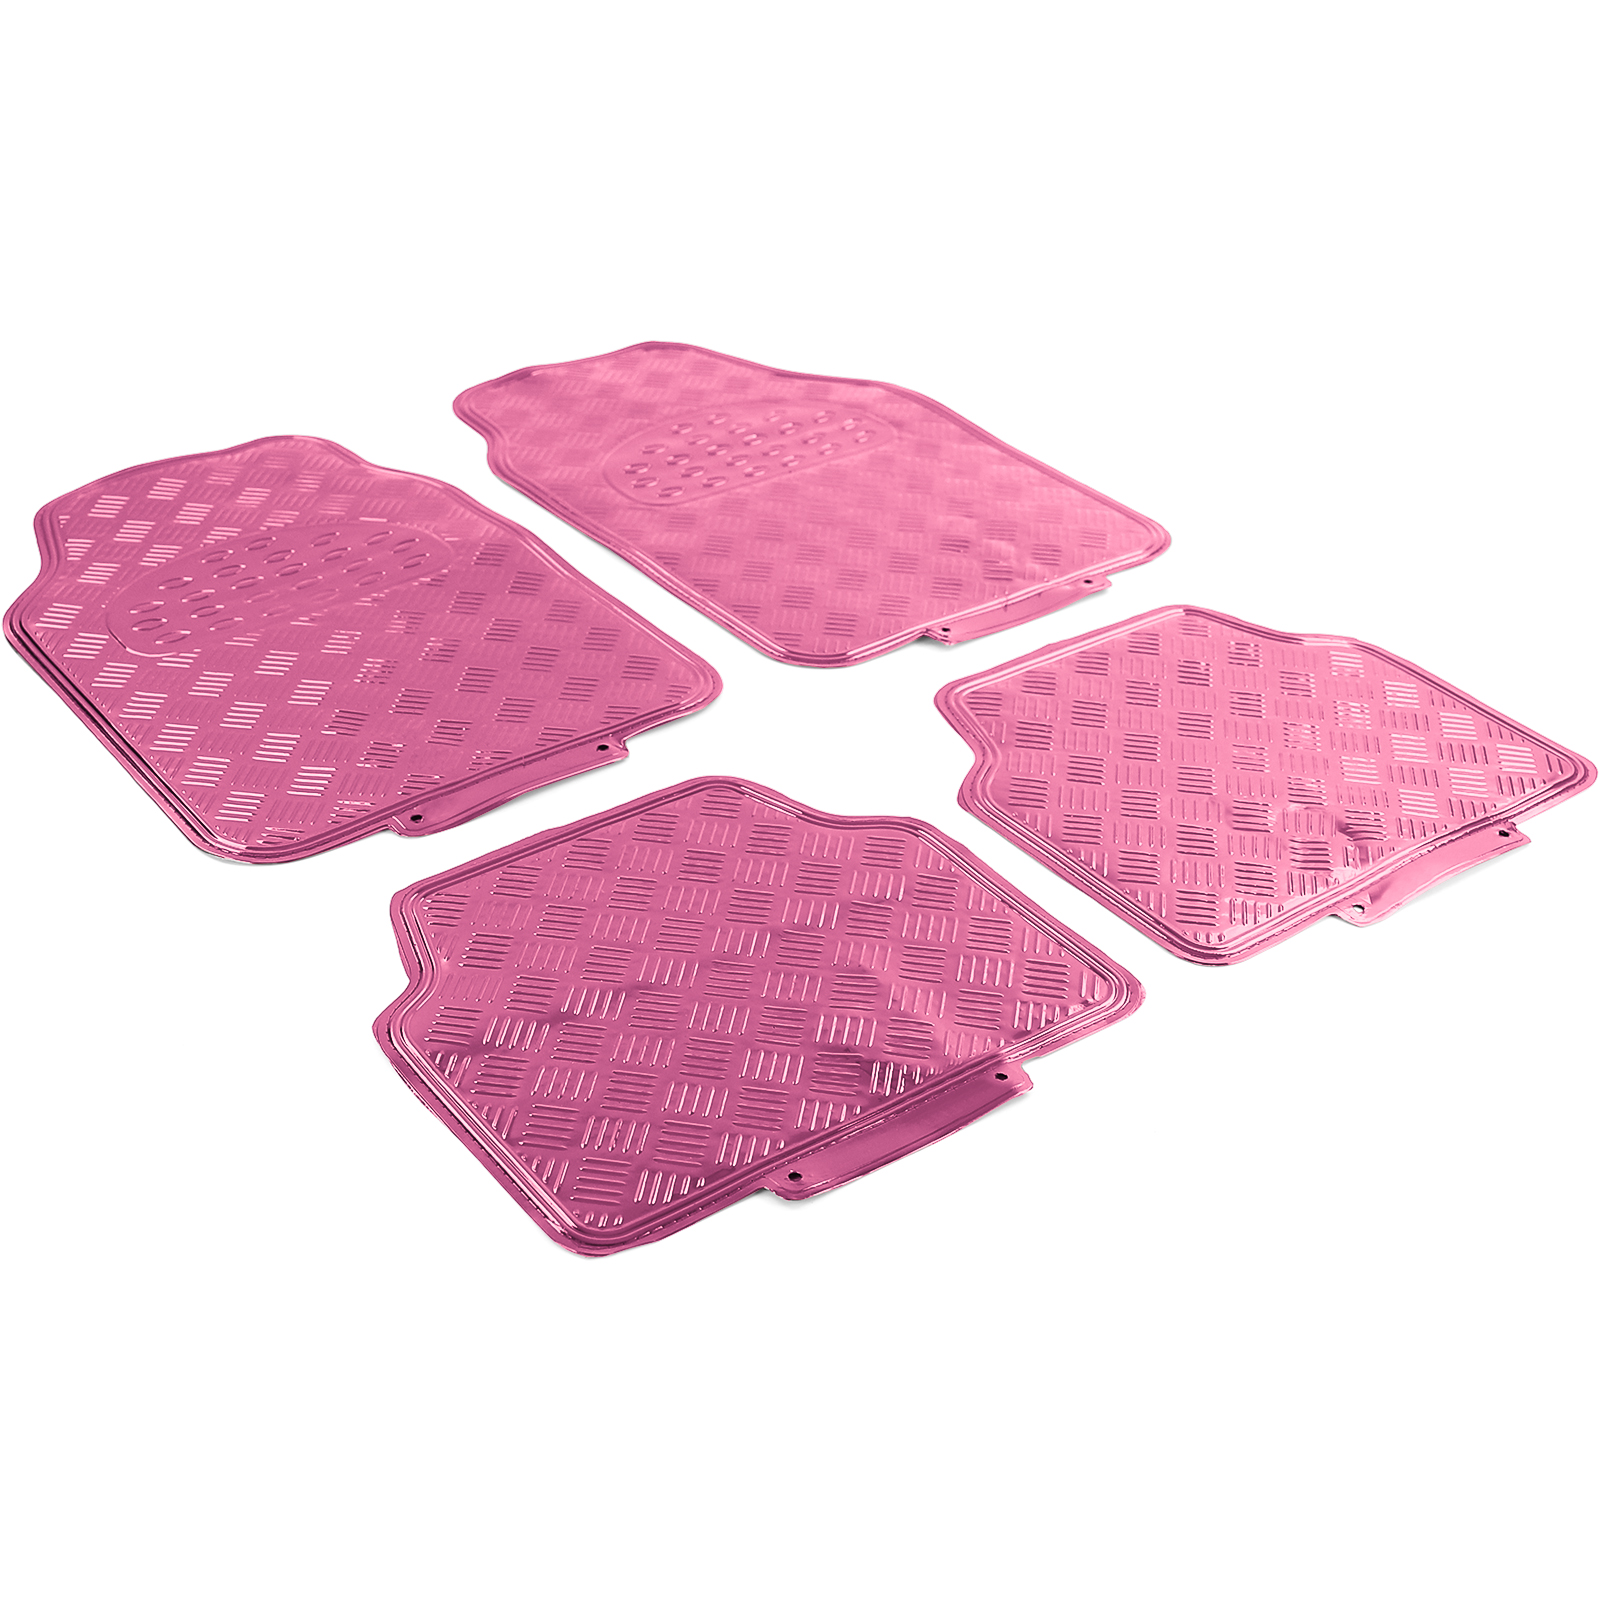 Alu 4-teilig Auto Gummi Pink Fußmatten Chrom universal Optik kaufen Riffelblech